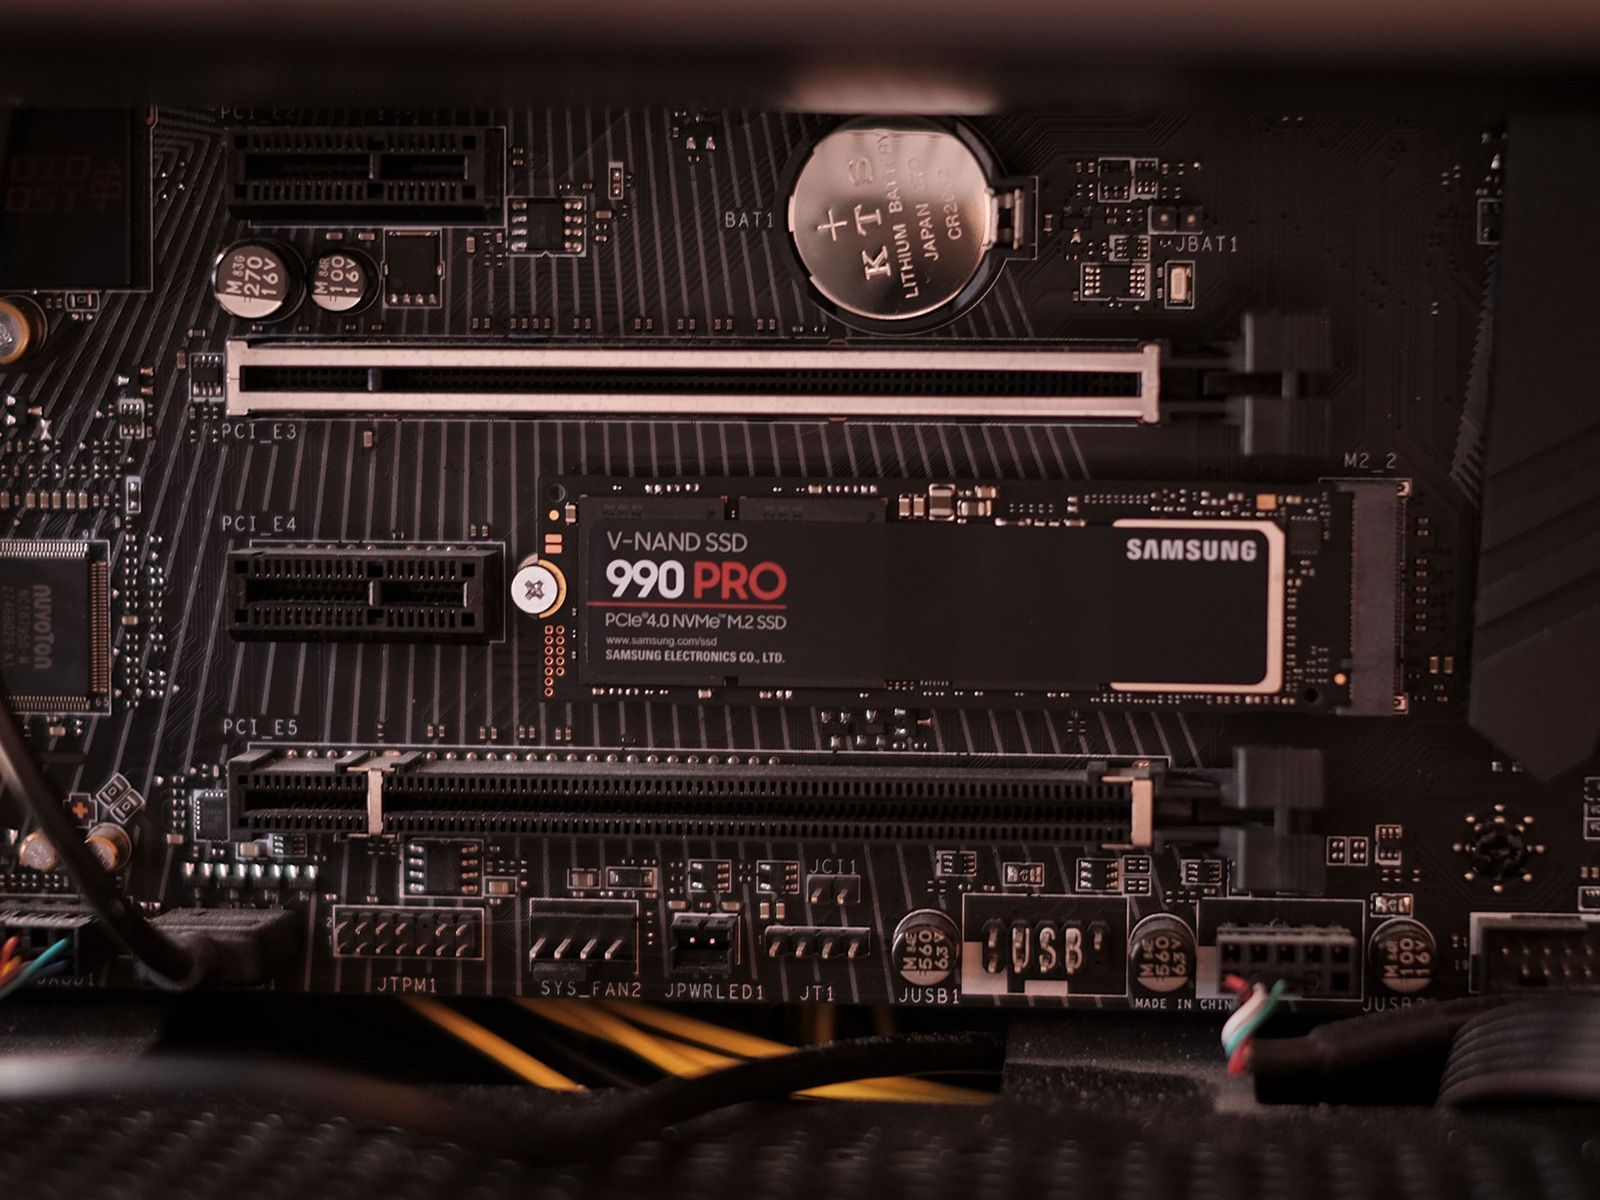  SSD SAMSUNG 990 PRO 2TB V-NAND M.2 PCIe Gen 4.0x4 NVMe 2.0 ( MZ-V9P2T0B/AM ) 